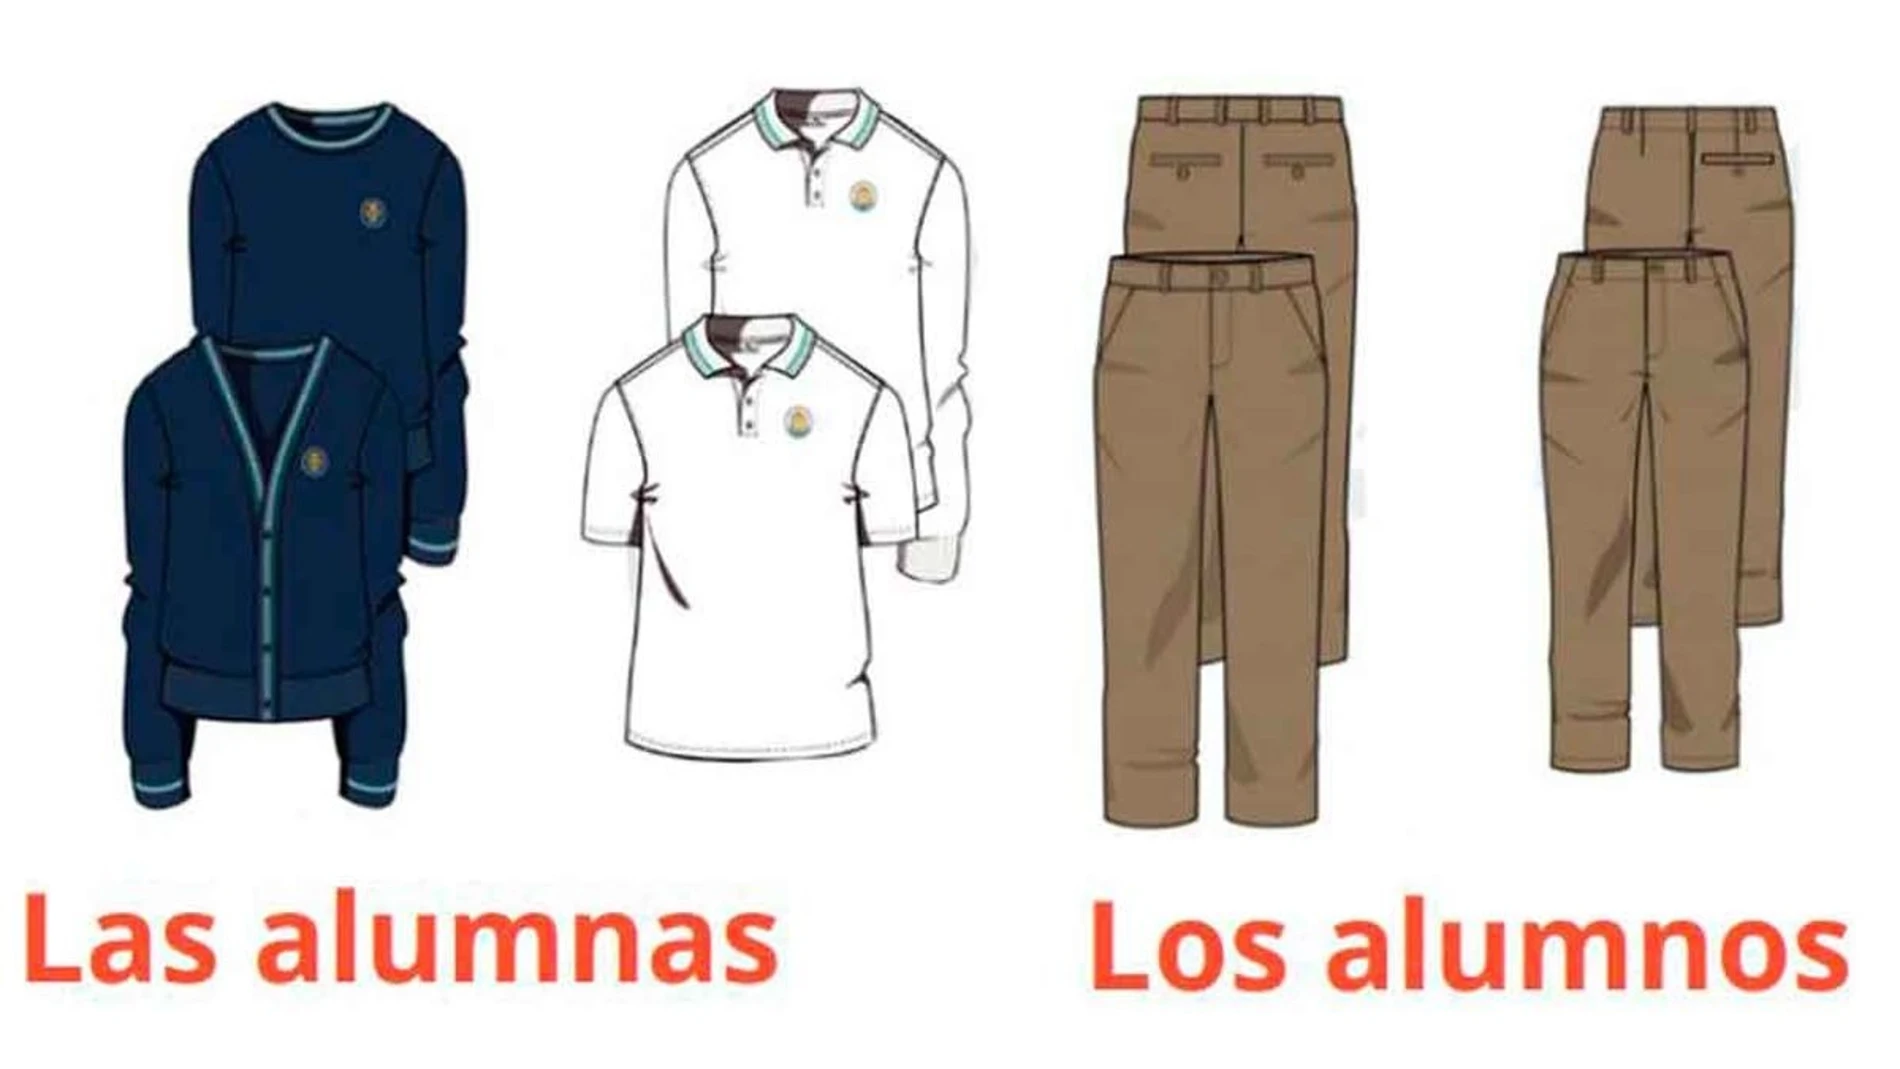 Un colegio de Palma de Mallorca la falda del uniforme